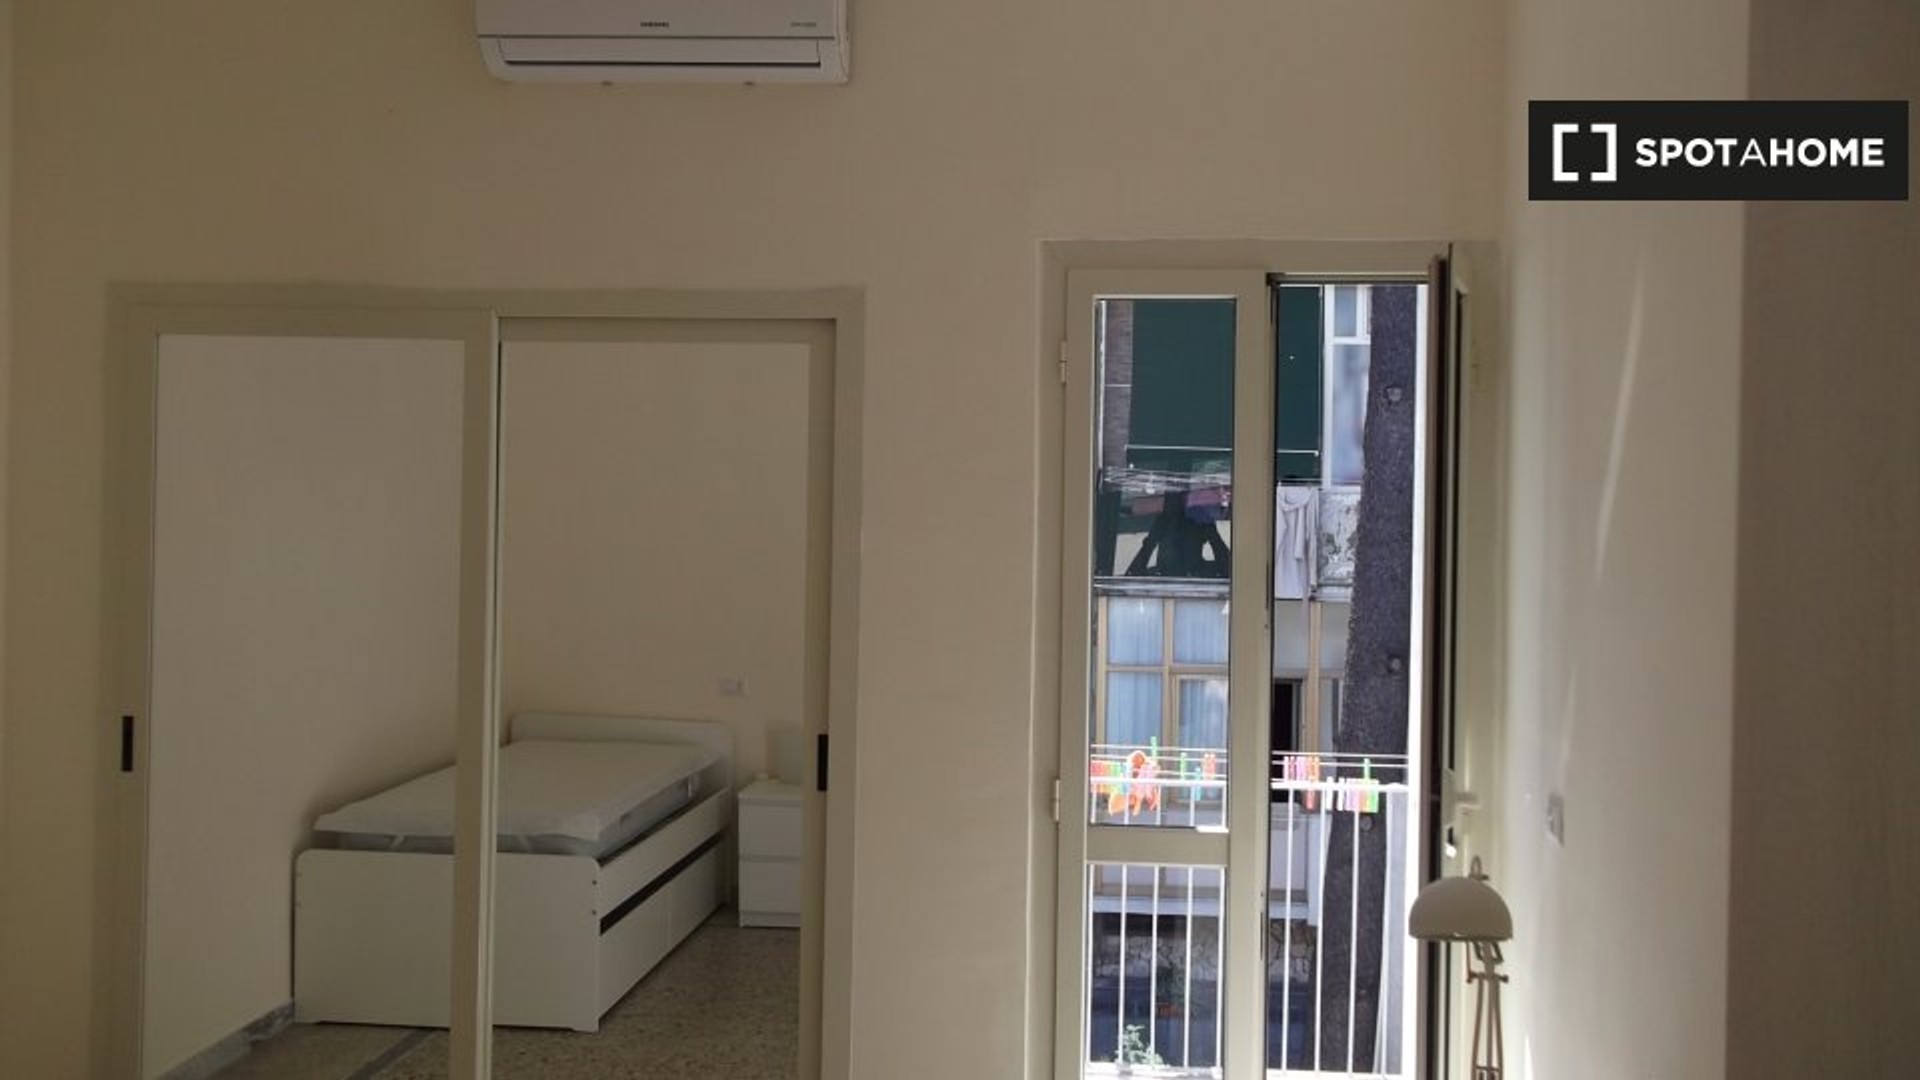 Napoli de çift kişilik yataklı kiralık oda